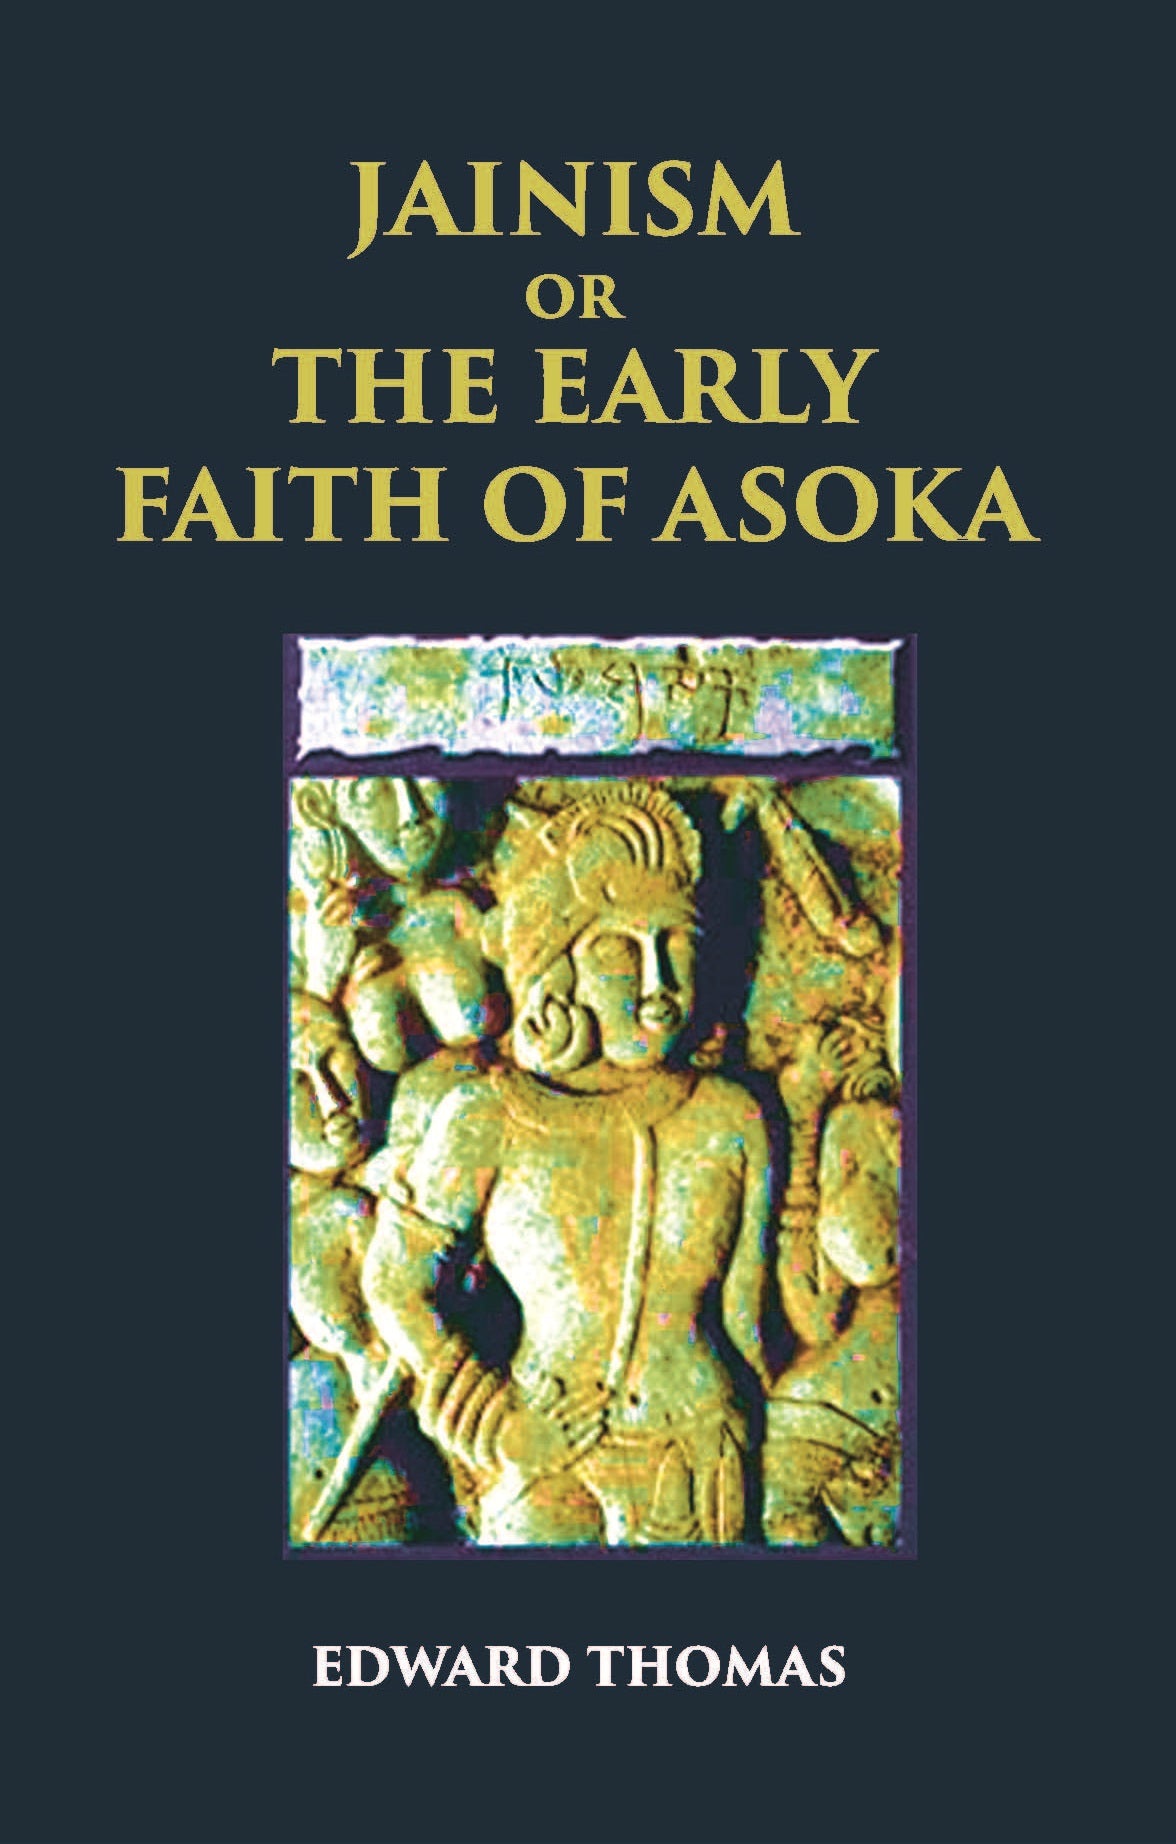 JAINISM OR THE EARLY FAITH OF ASOKA